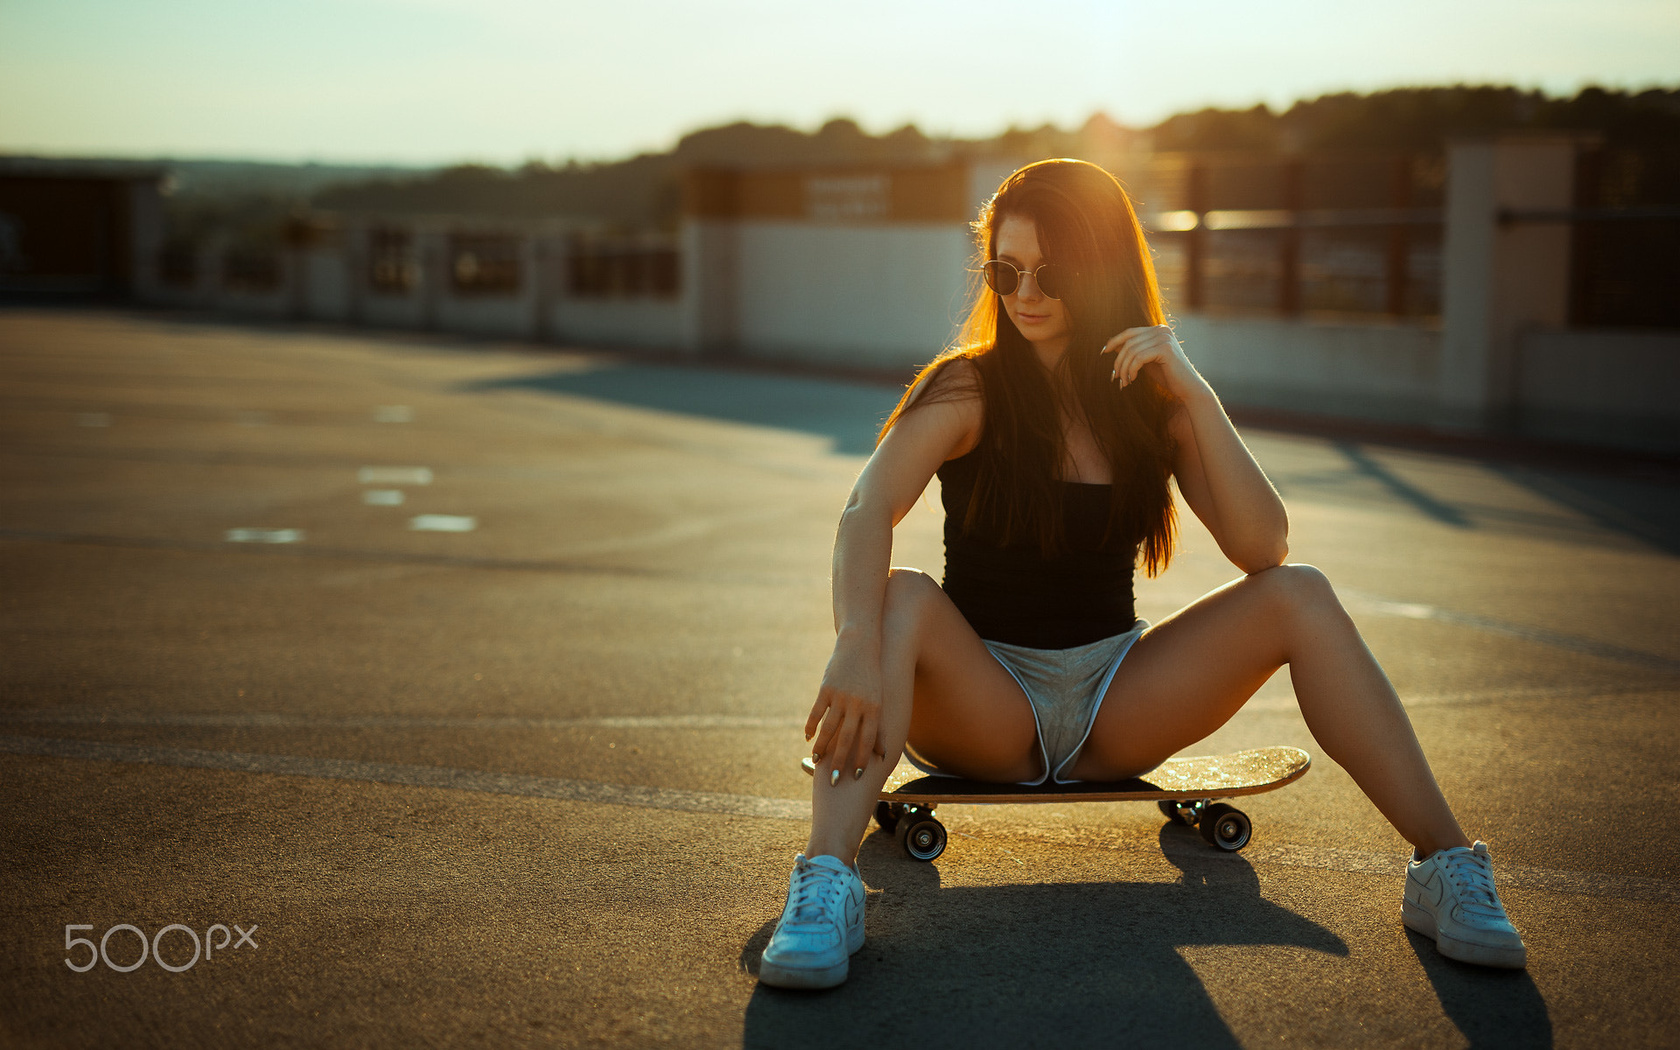 women, sitting, shorts, women outdoors, tanned, skateboards, pread legs, 500px